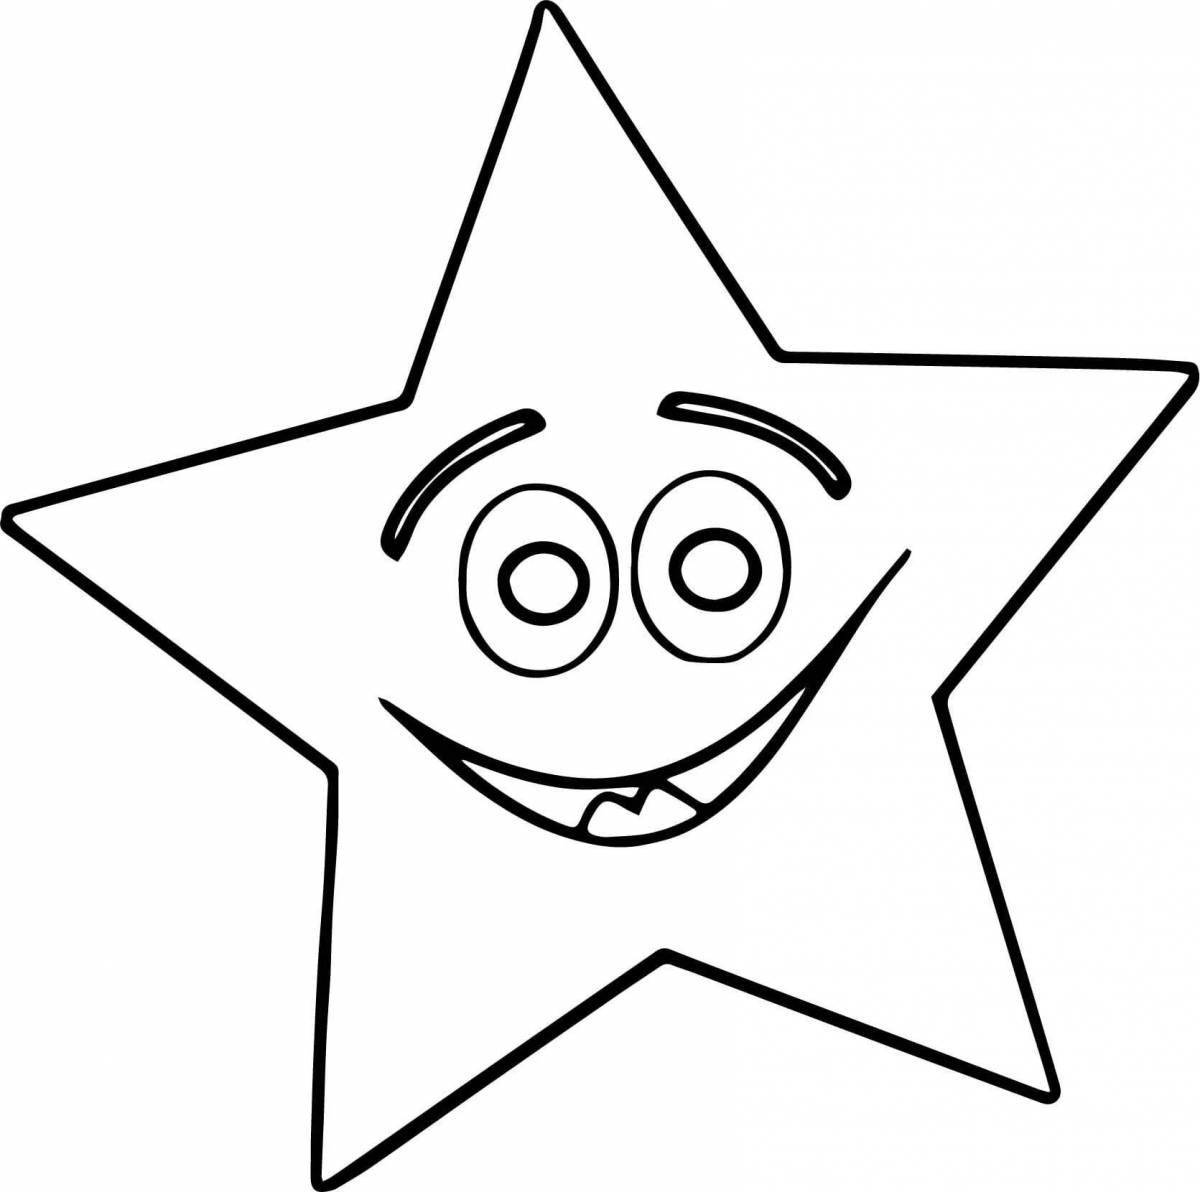 Красочная раскраска звездочка для дошкольников 3-4 лет